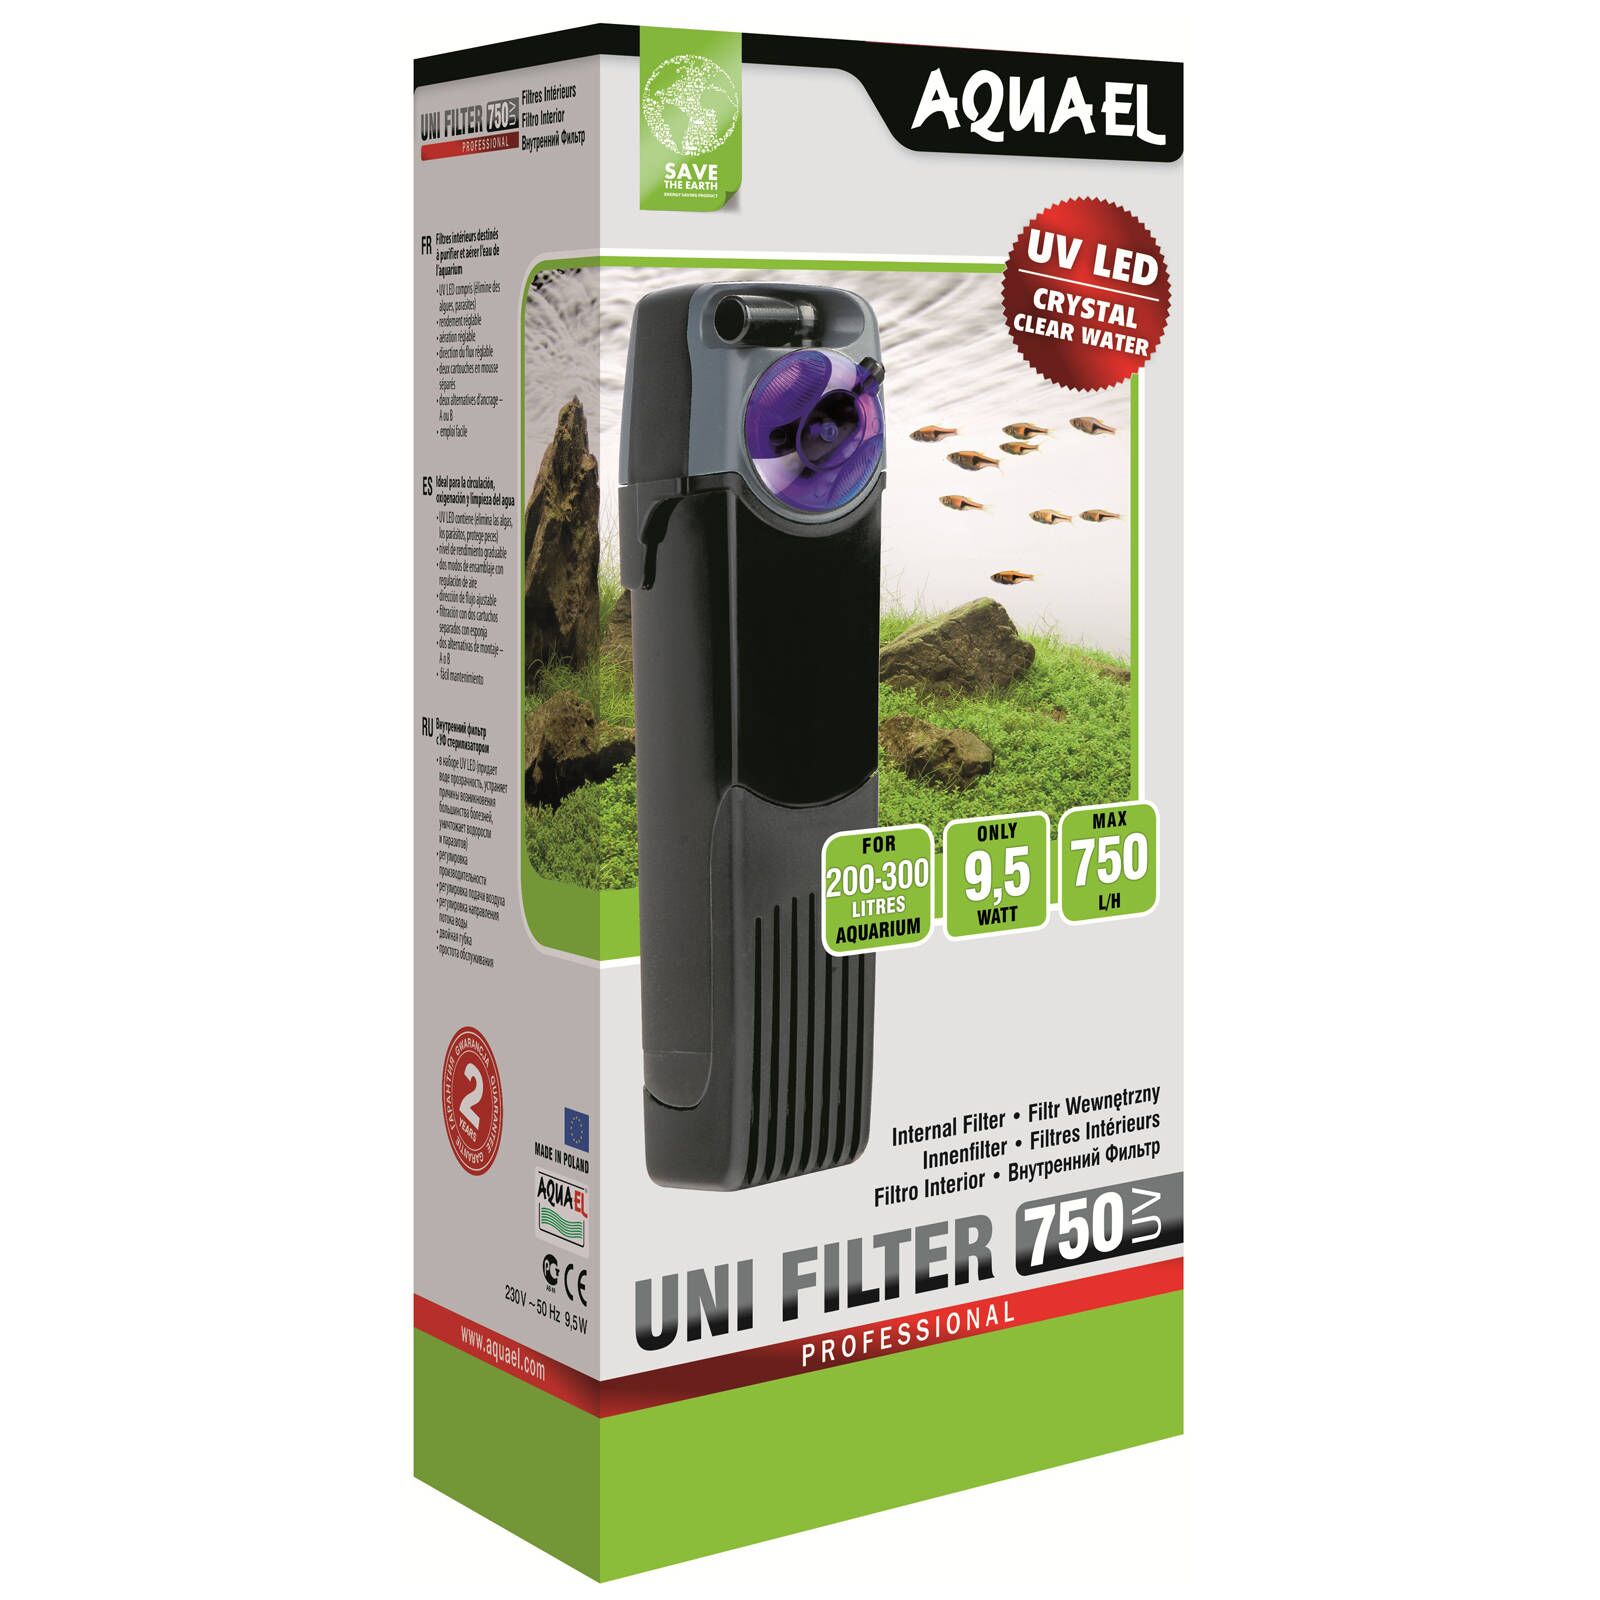 Aquael - Unifilter UV